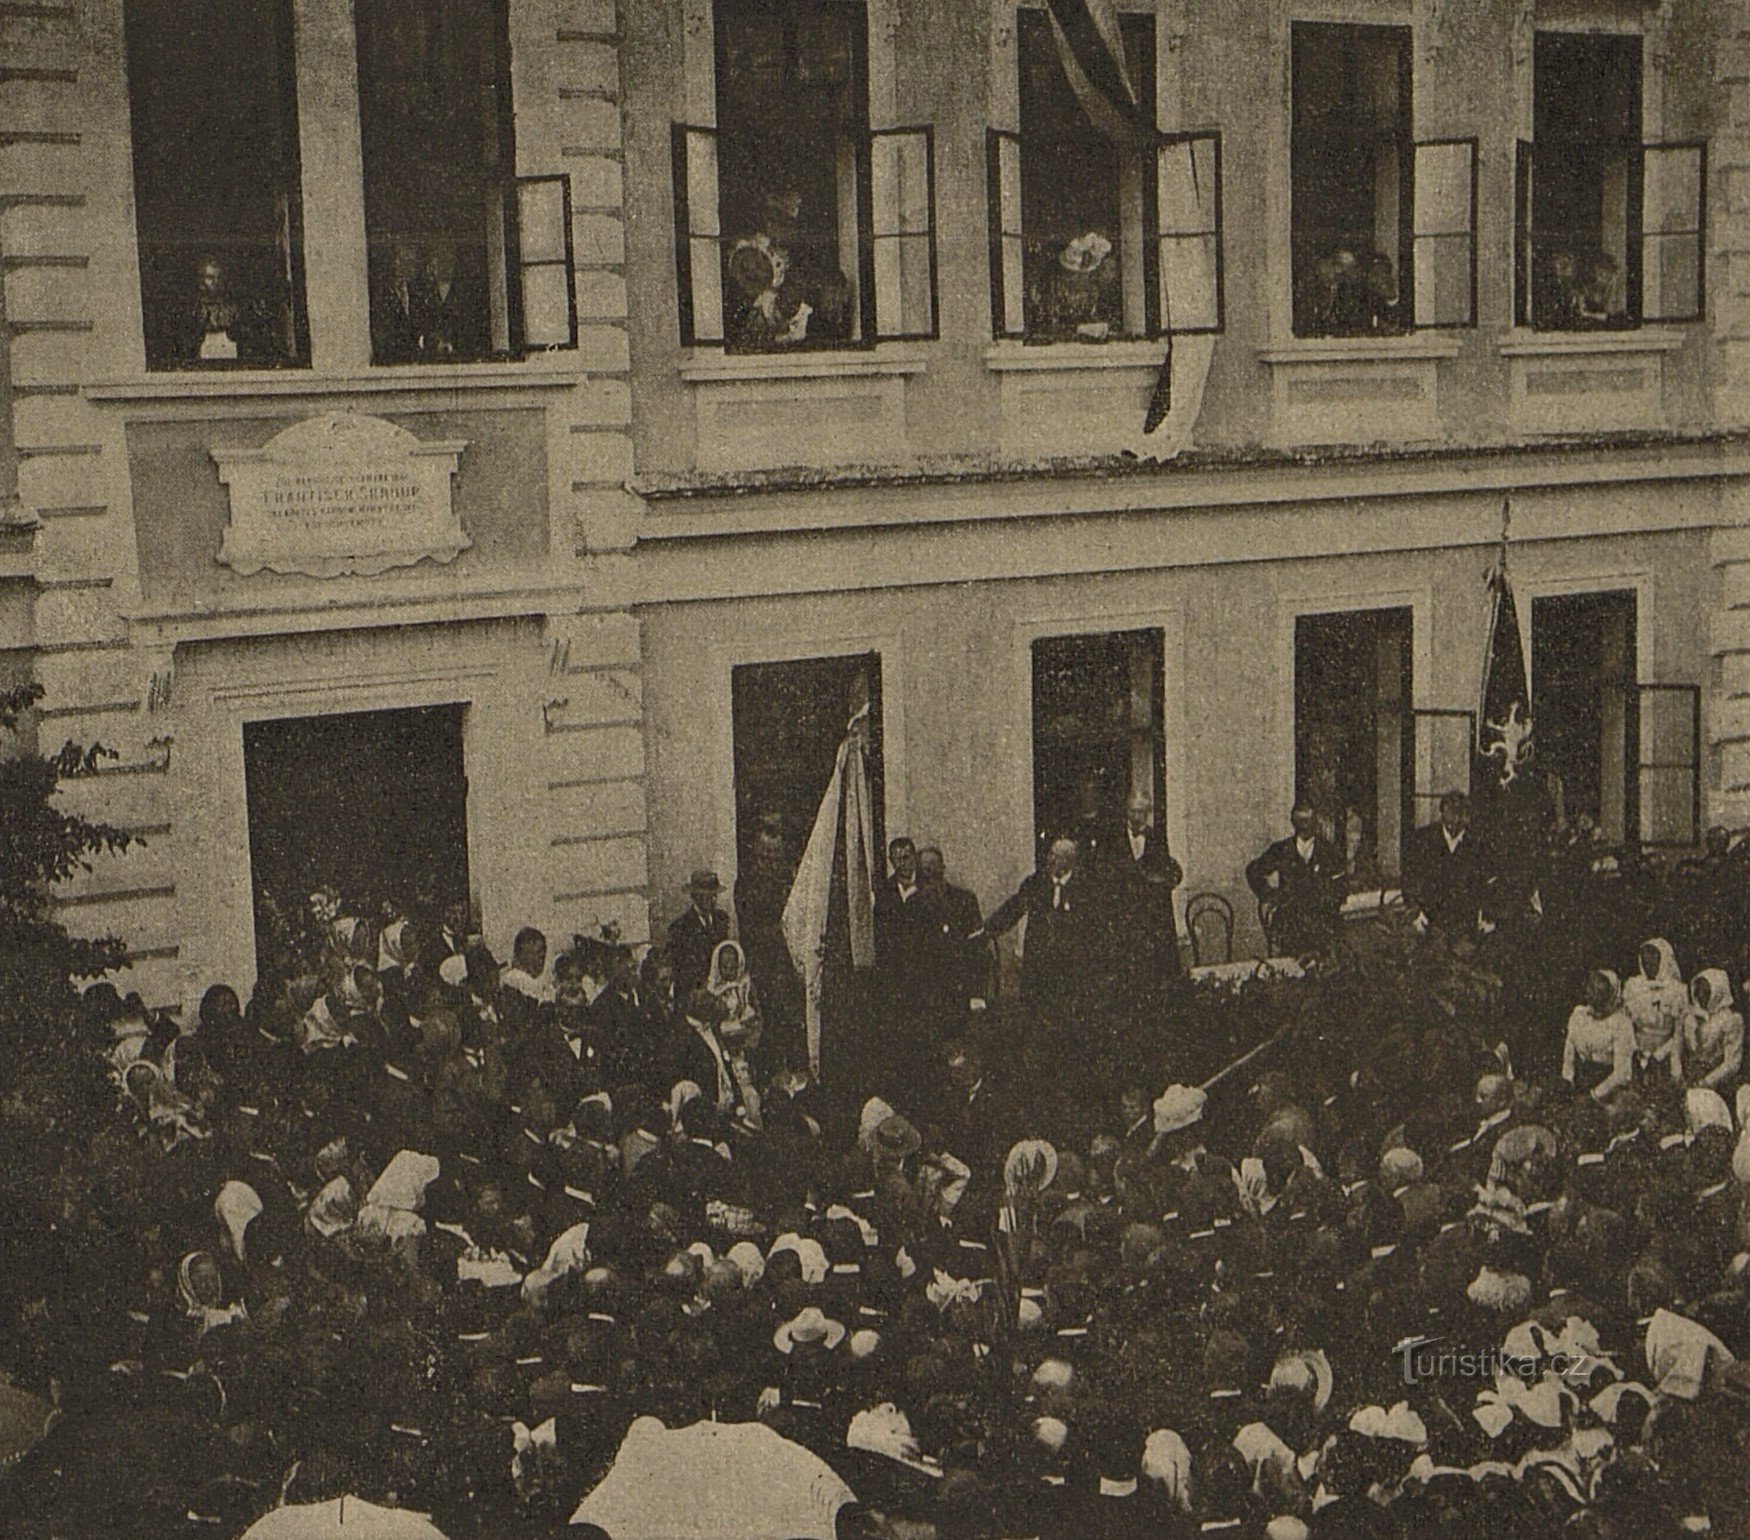 Svečano otkrivanje spomen-ploče Františeku Škroupu u Osicama 1901.